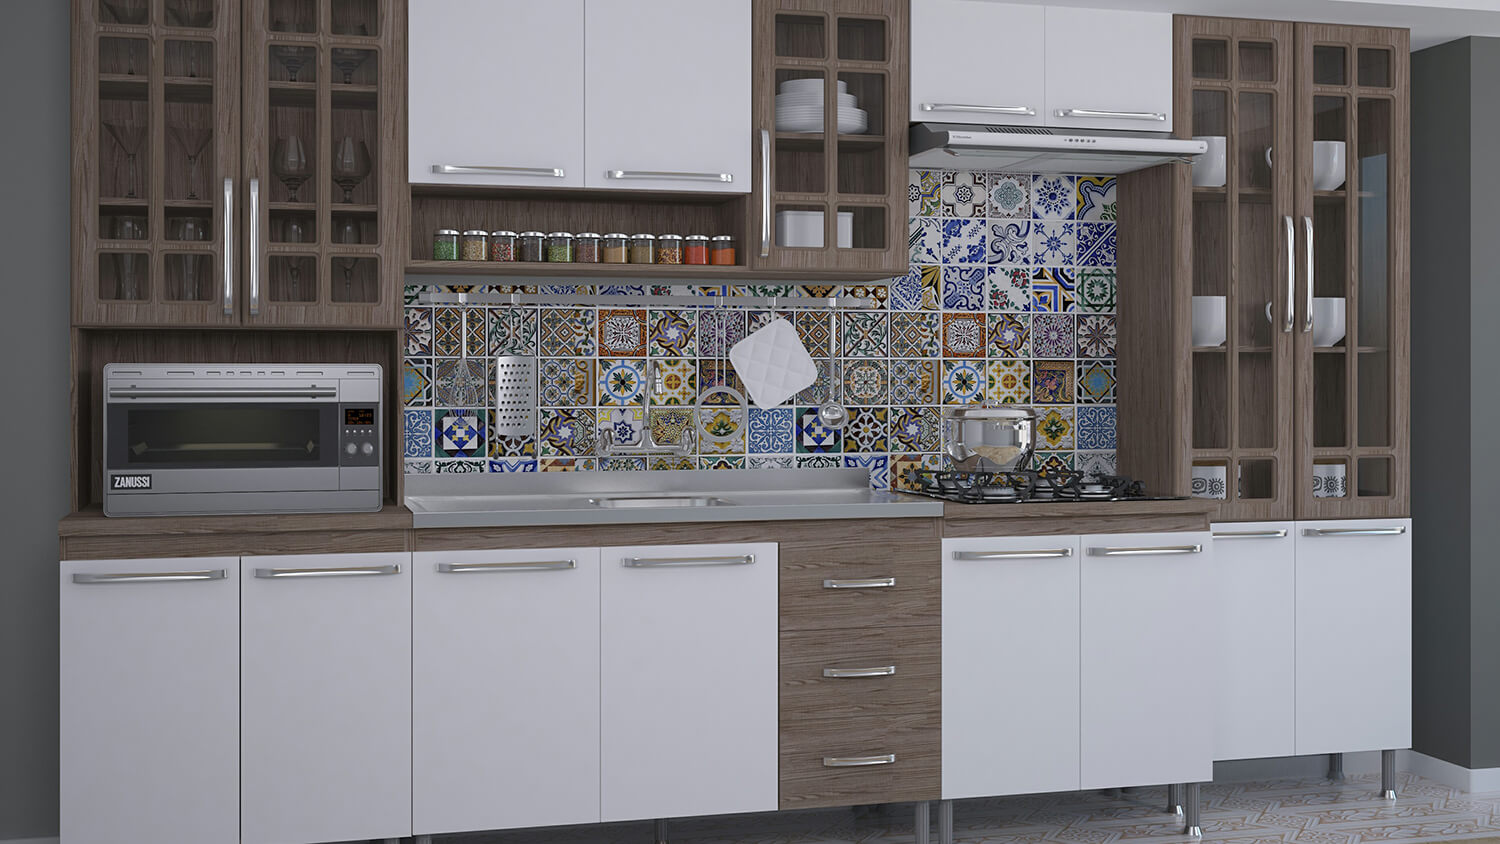 Cozinha decorada com azulejo antigo